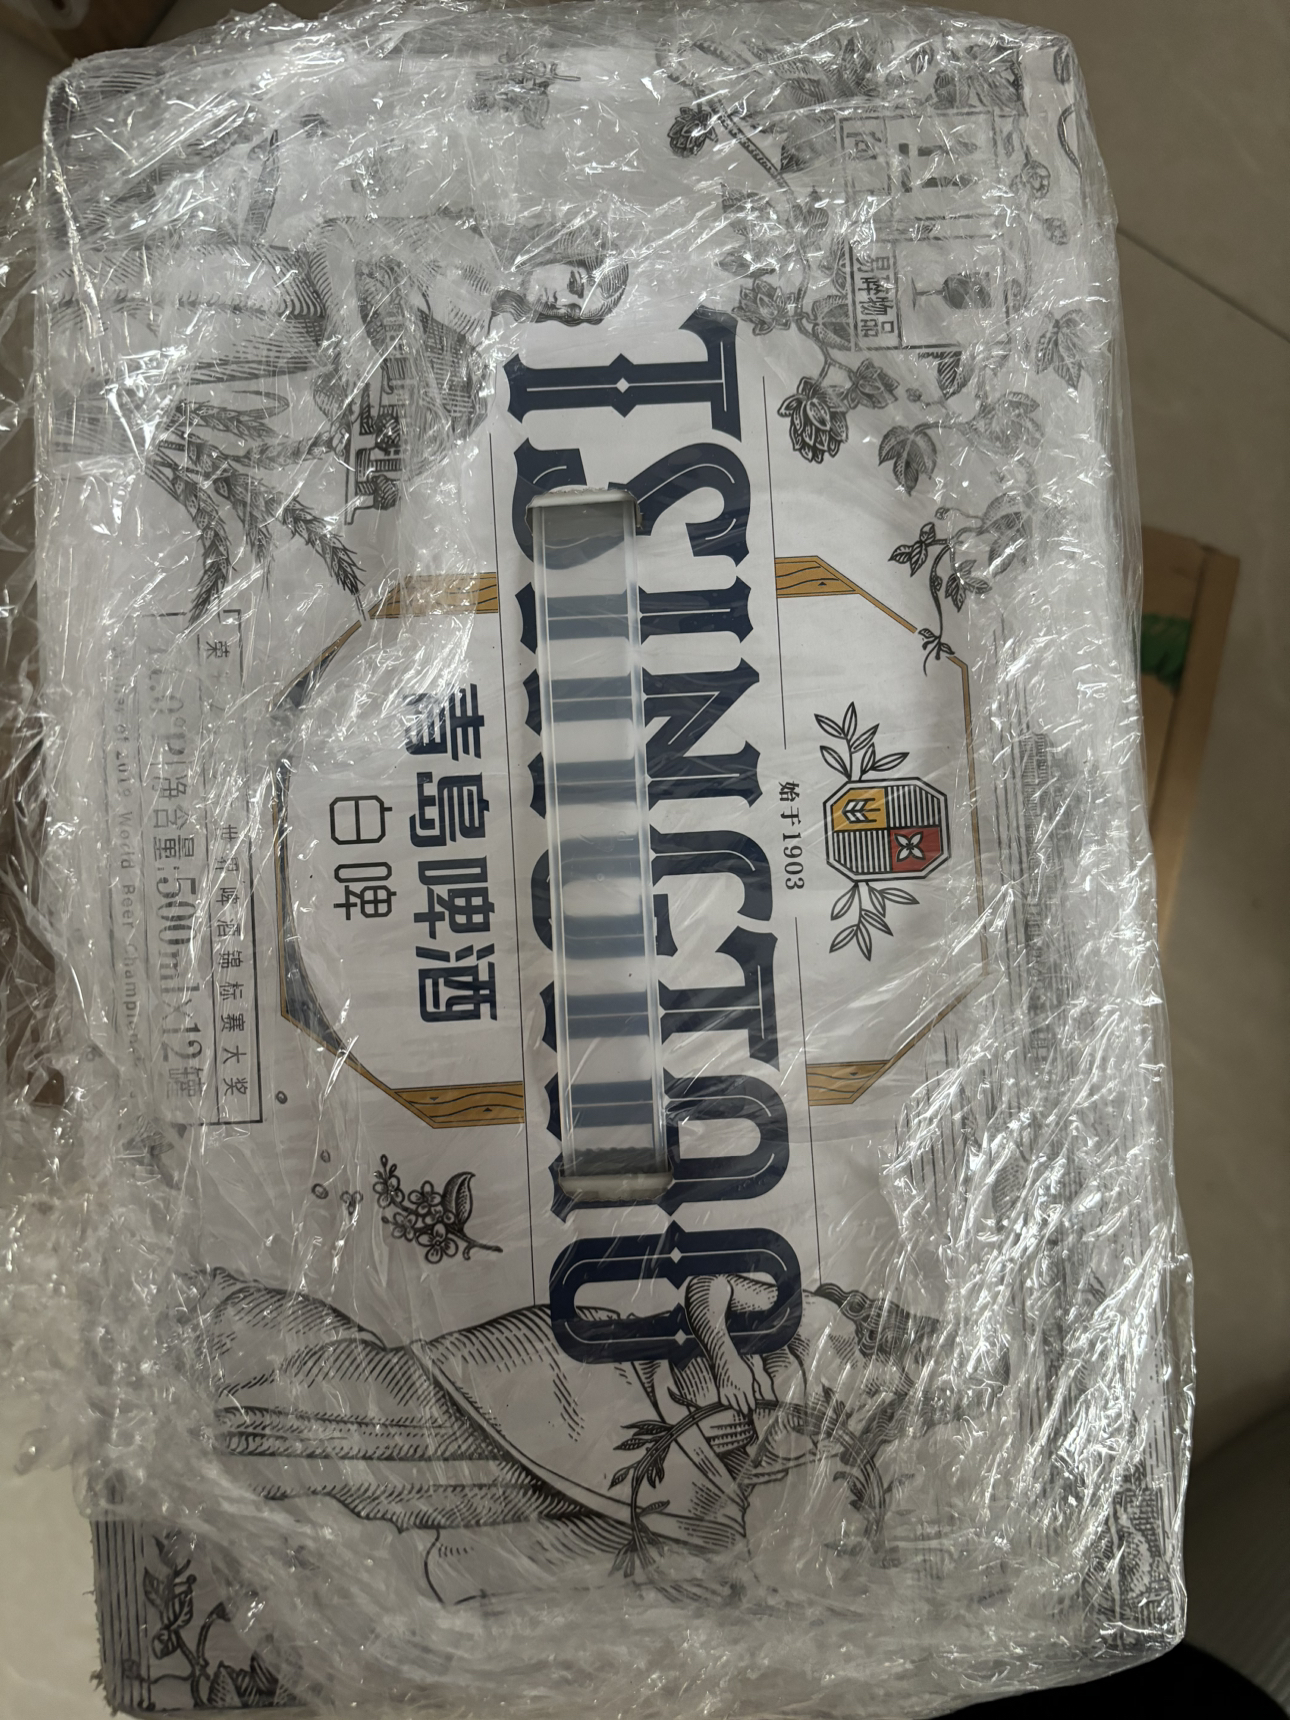 青岛啤酒(TSINGTAO)白啤11度500ml*12罐(20版)整箱装晒单图